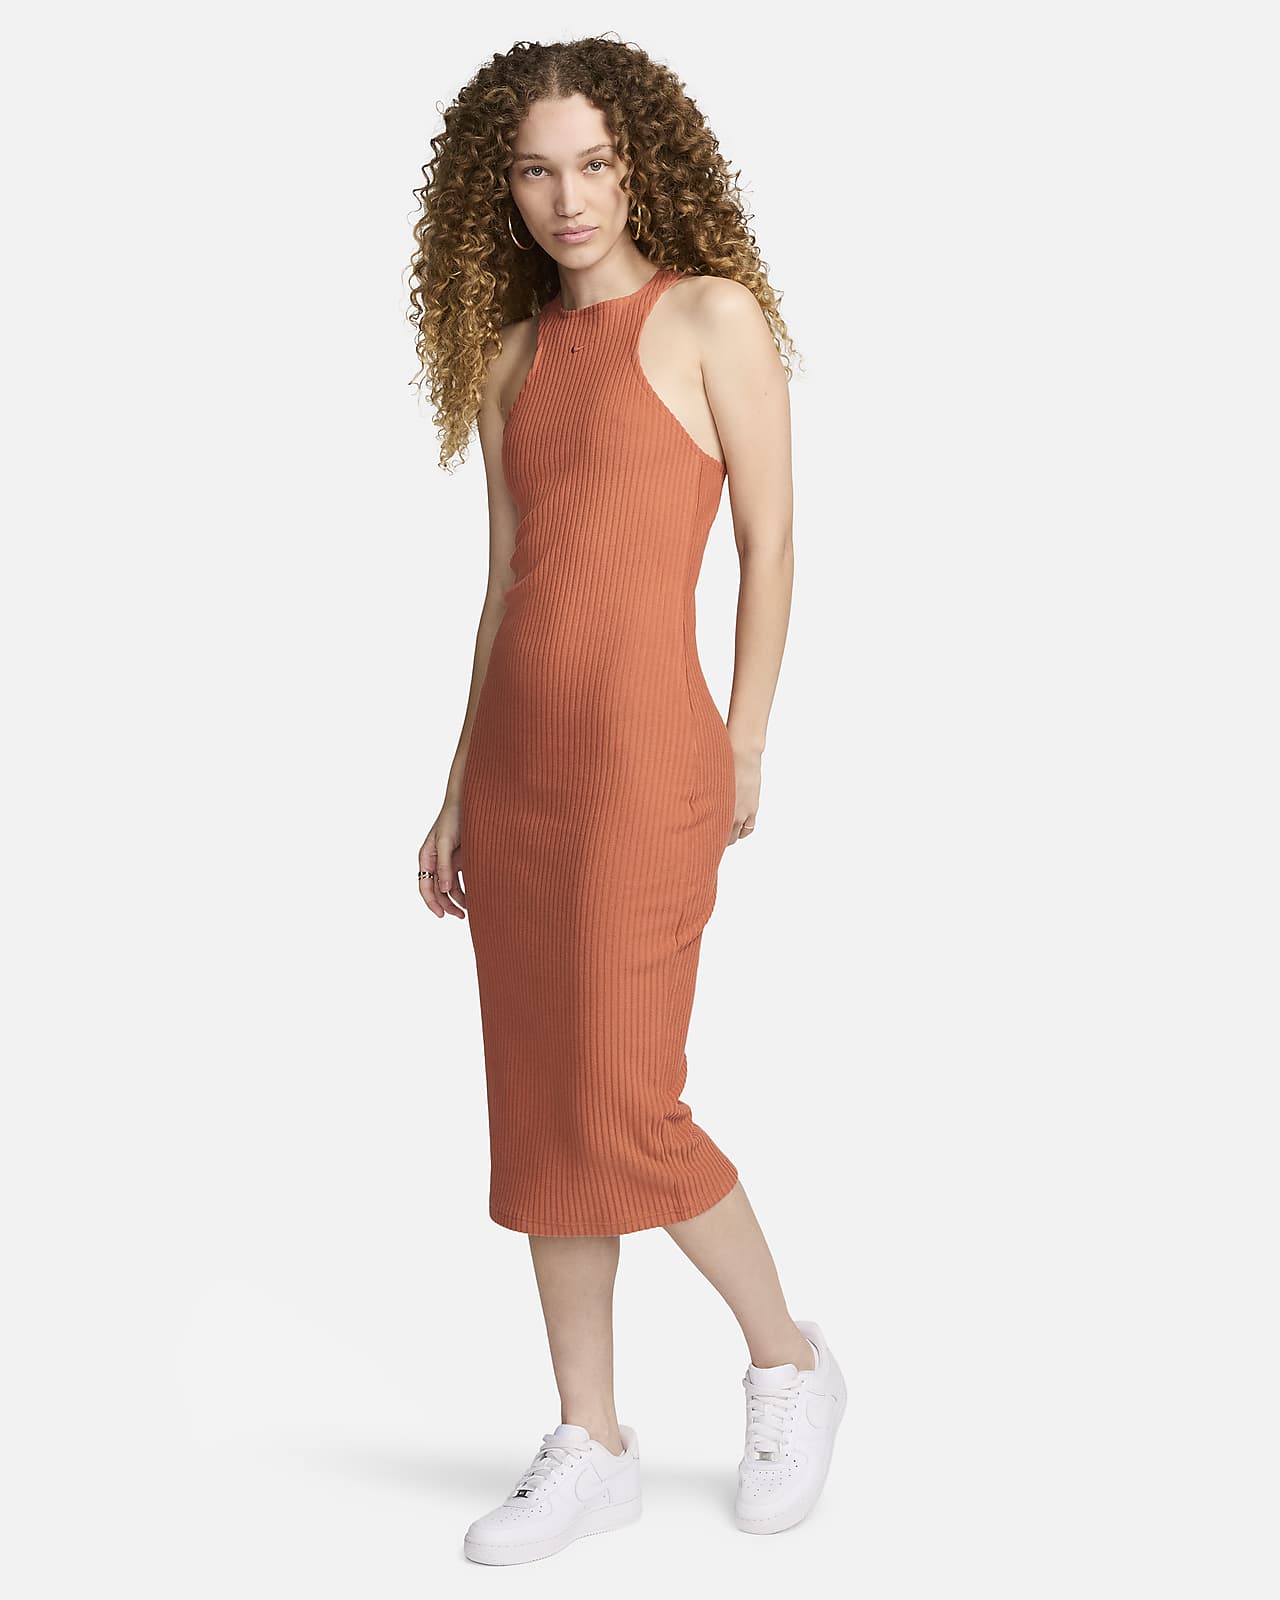 Γυναικείο αμάνικο μίντι φόρεμα σε στενή γραμμή και ριμπ ύφανση Nike Sportswear Chill Knit